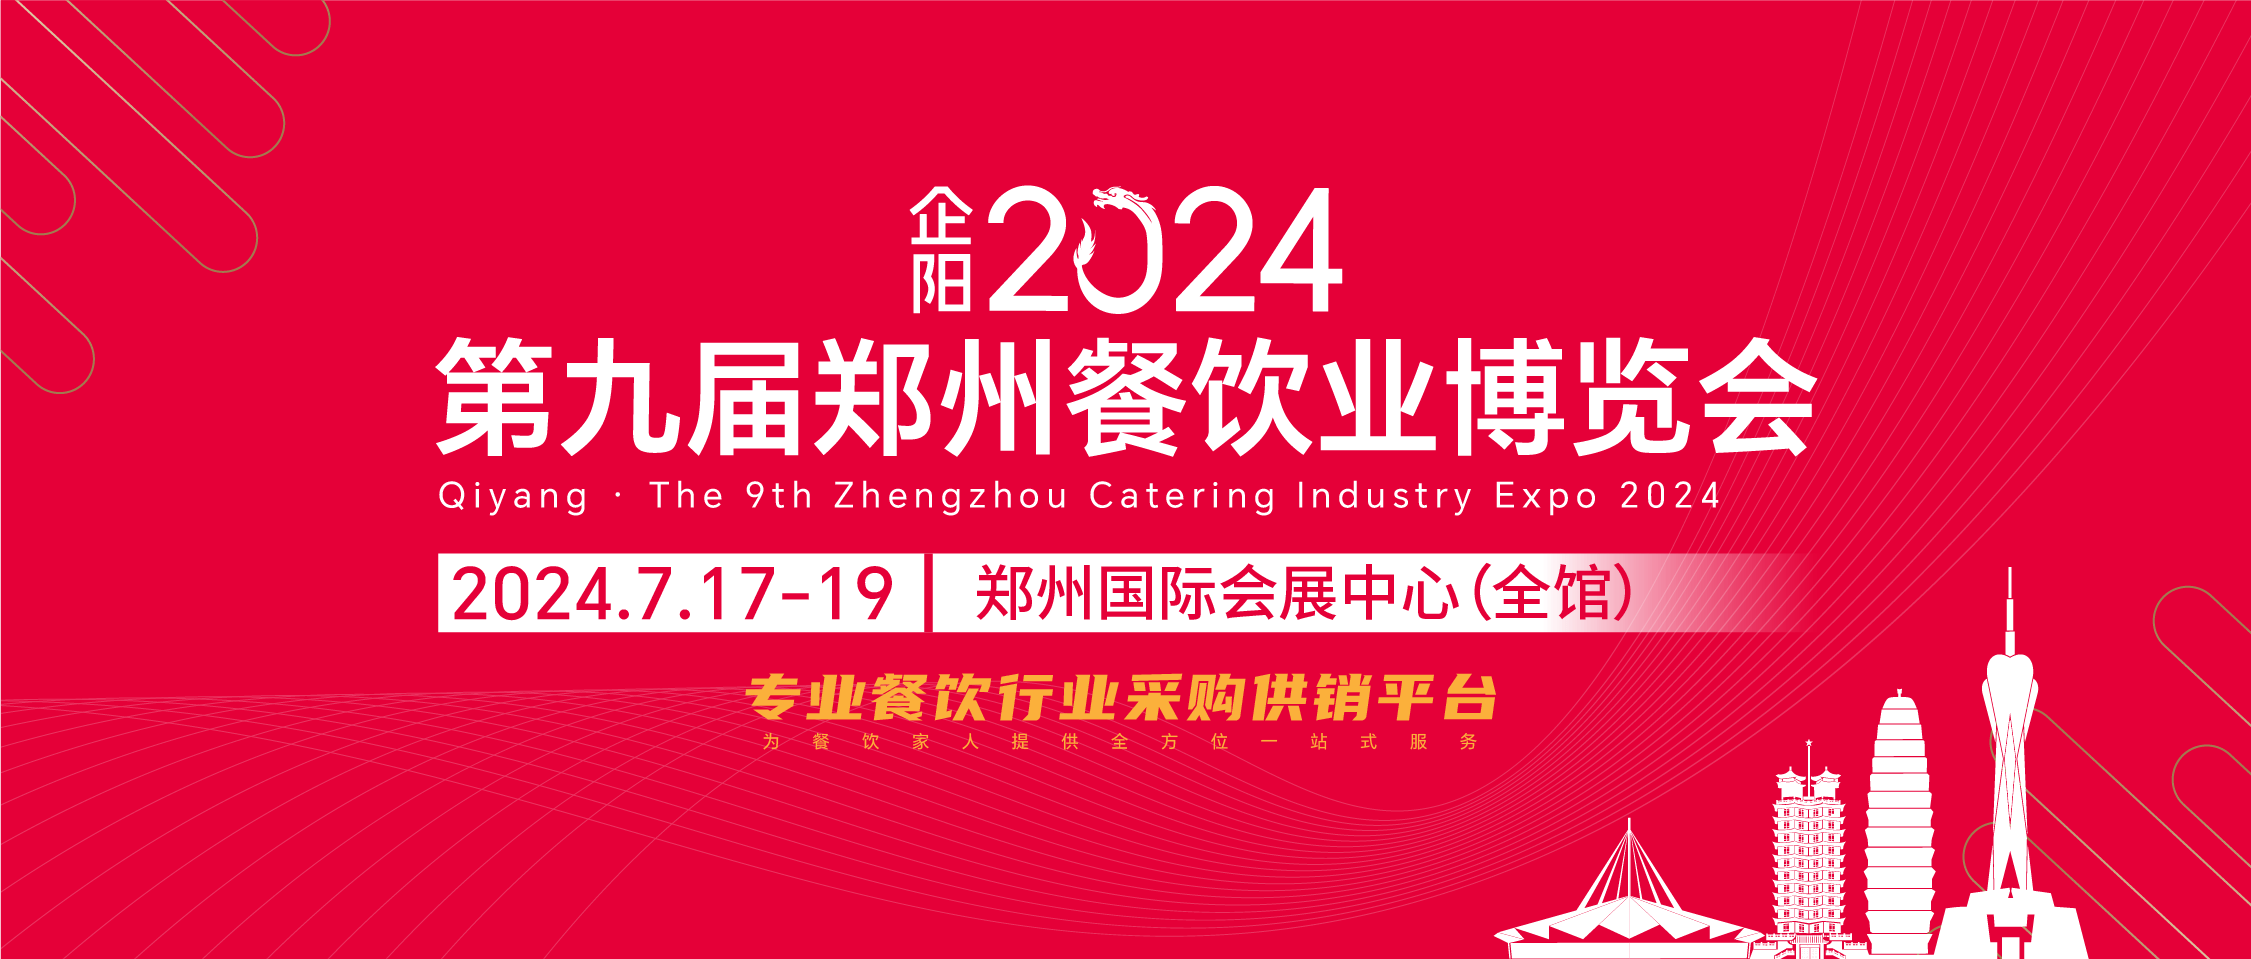 2024郑州餐饮展：郑州特色美食郑州烩面